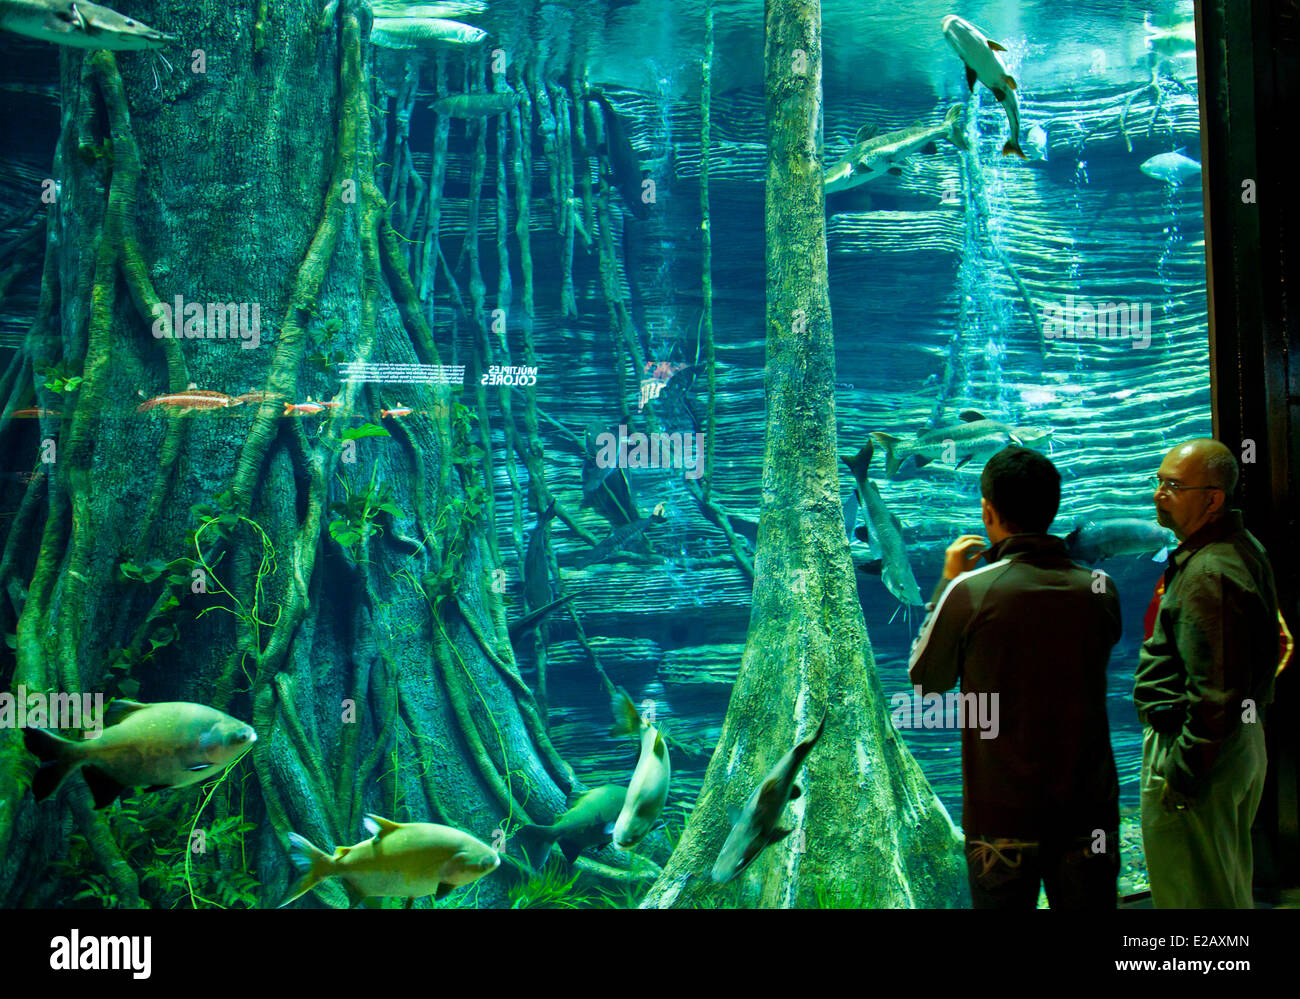 Colombia, Antioquia Department, Medellin, the giant Aquarium of Parque Explora Stock Photo